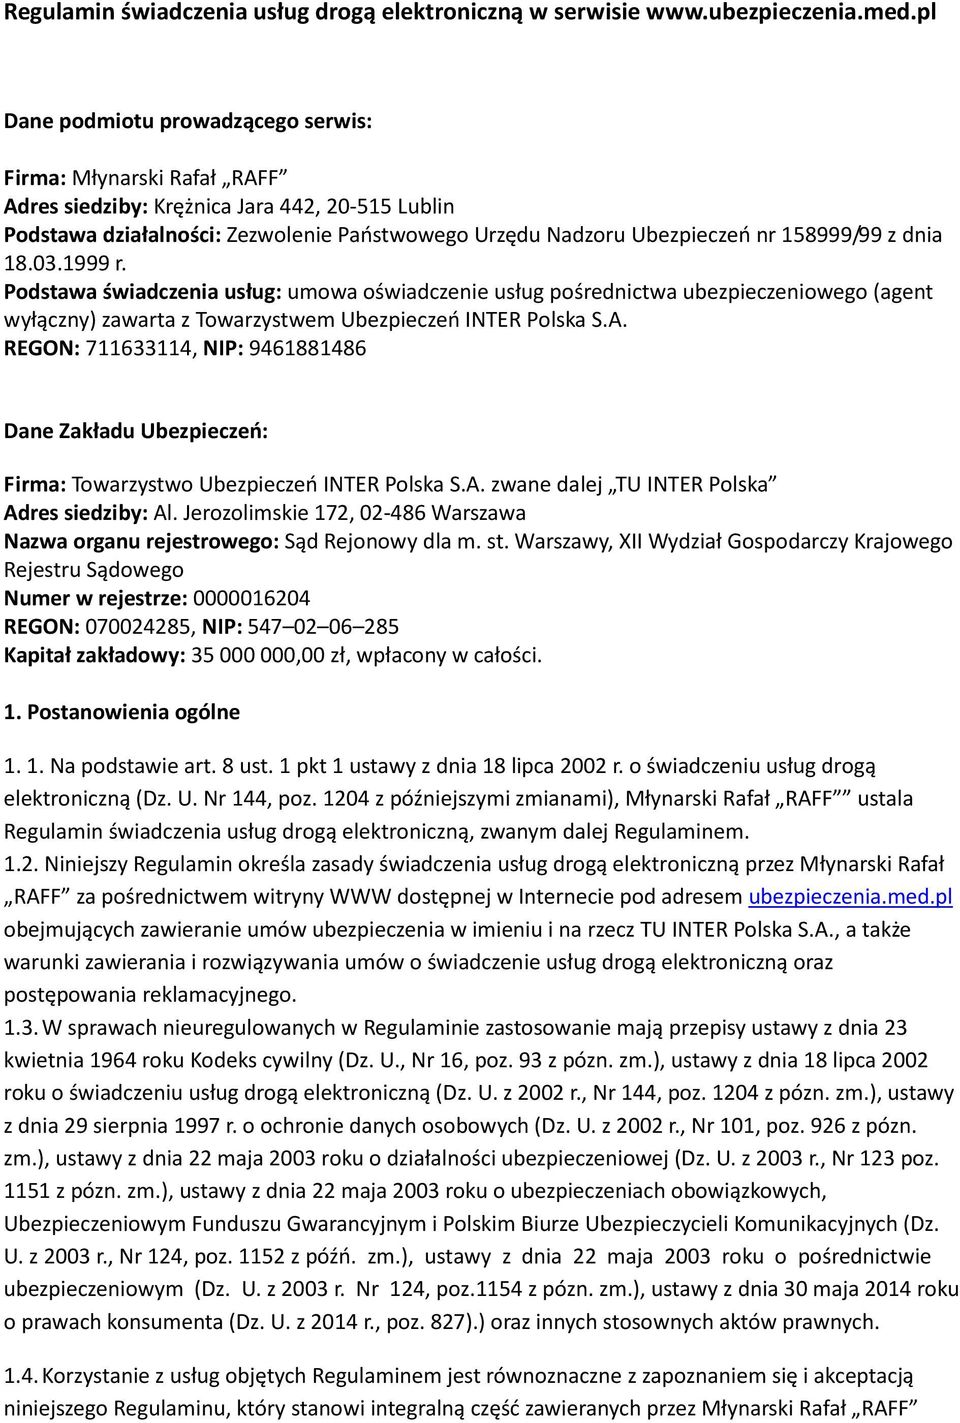 158999/99 z dnia 18.03.1999 r. Podstawa świadczenia usług: umowa oświadczenie usług pośrednictwa ubezpieczeniowego (agent wyłączny) zawarta z Towarzystwem Ubezpieczeń INTER Polska S.A.